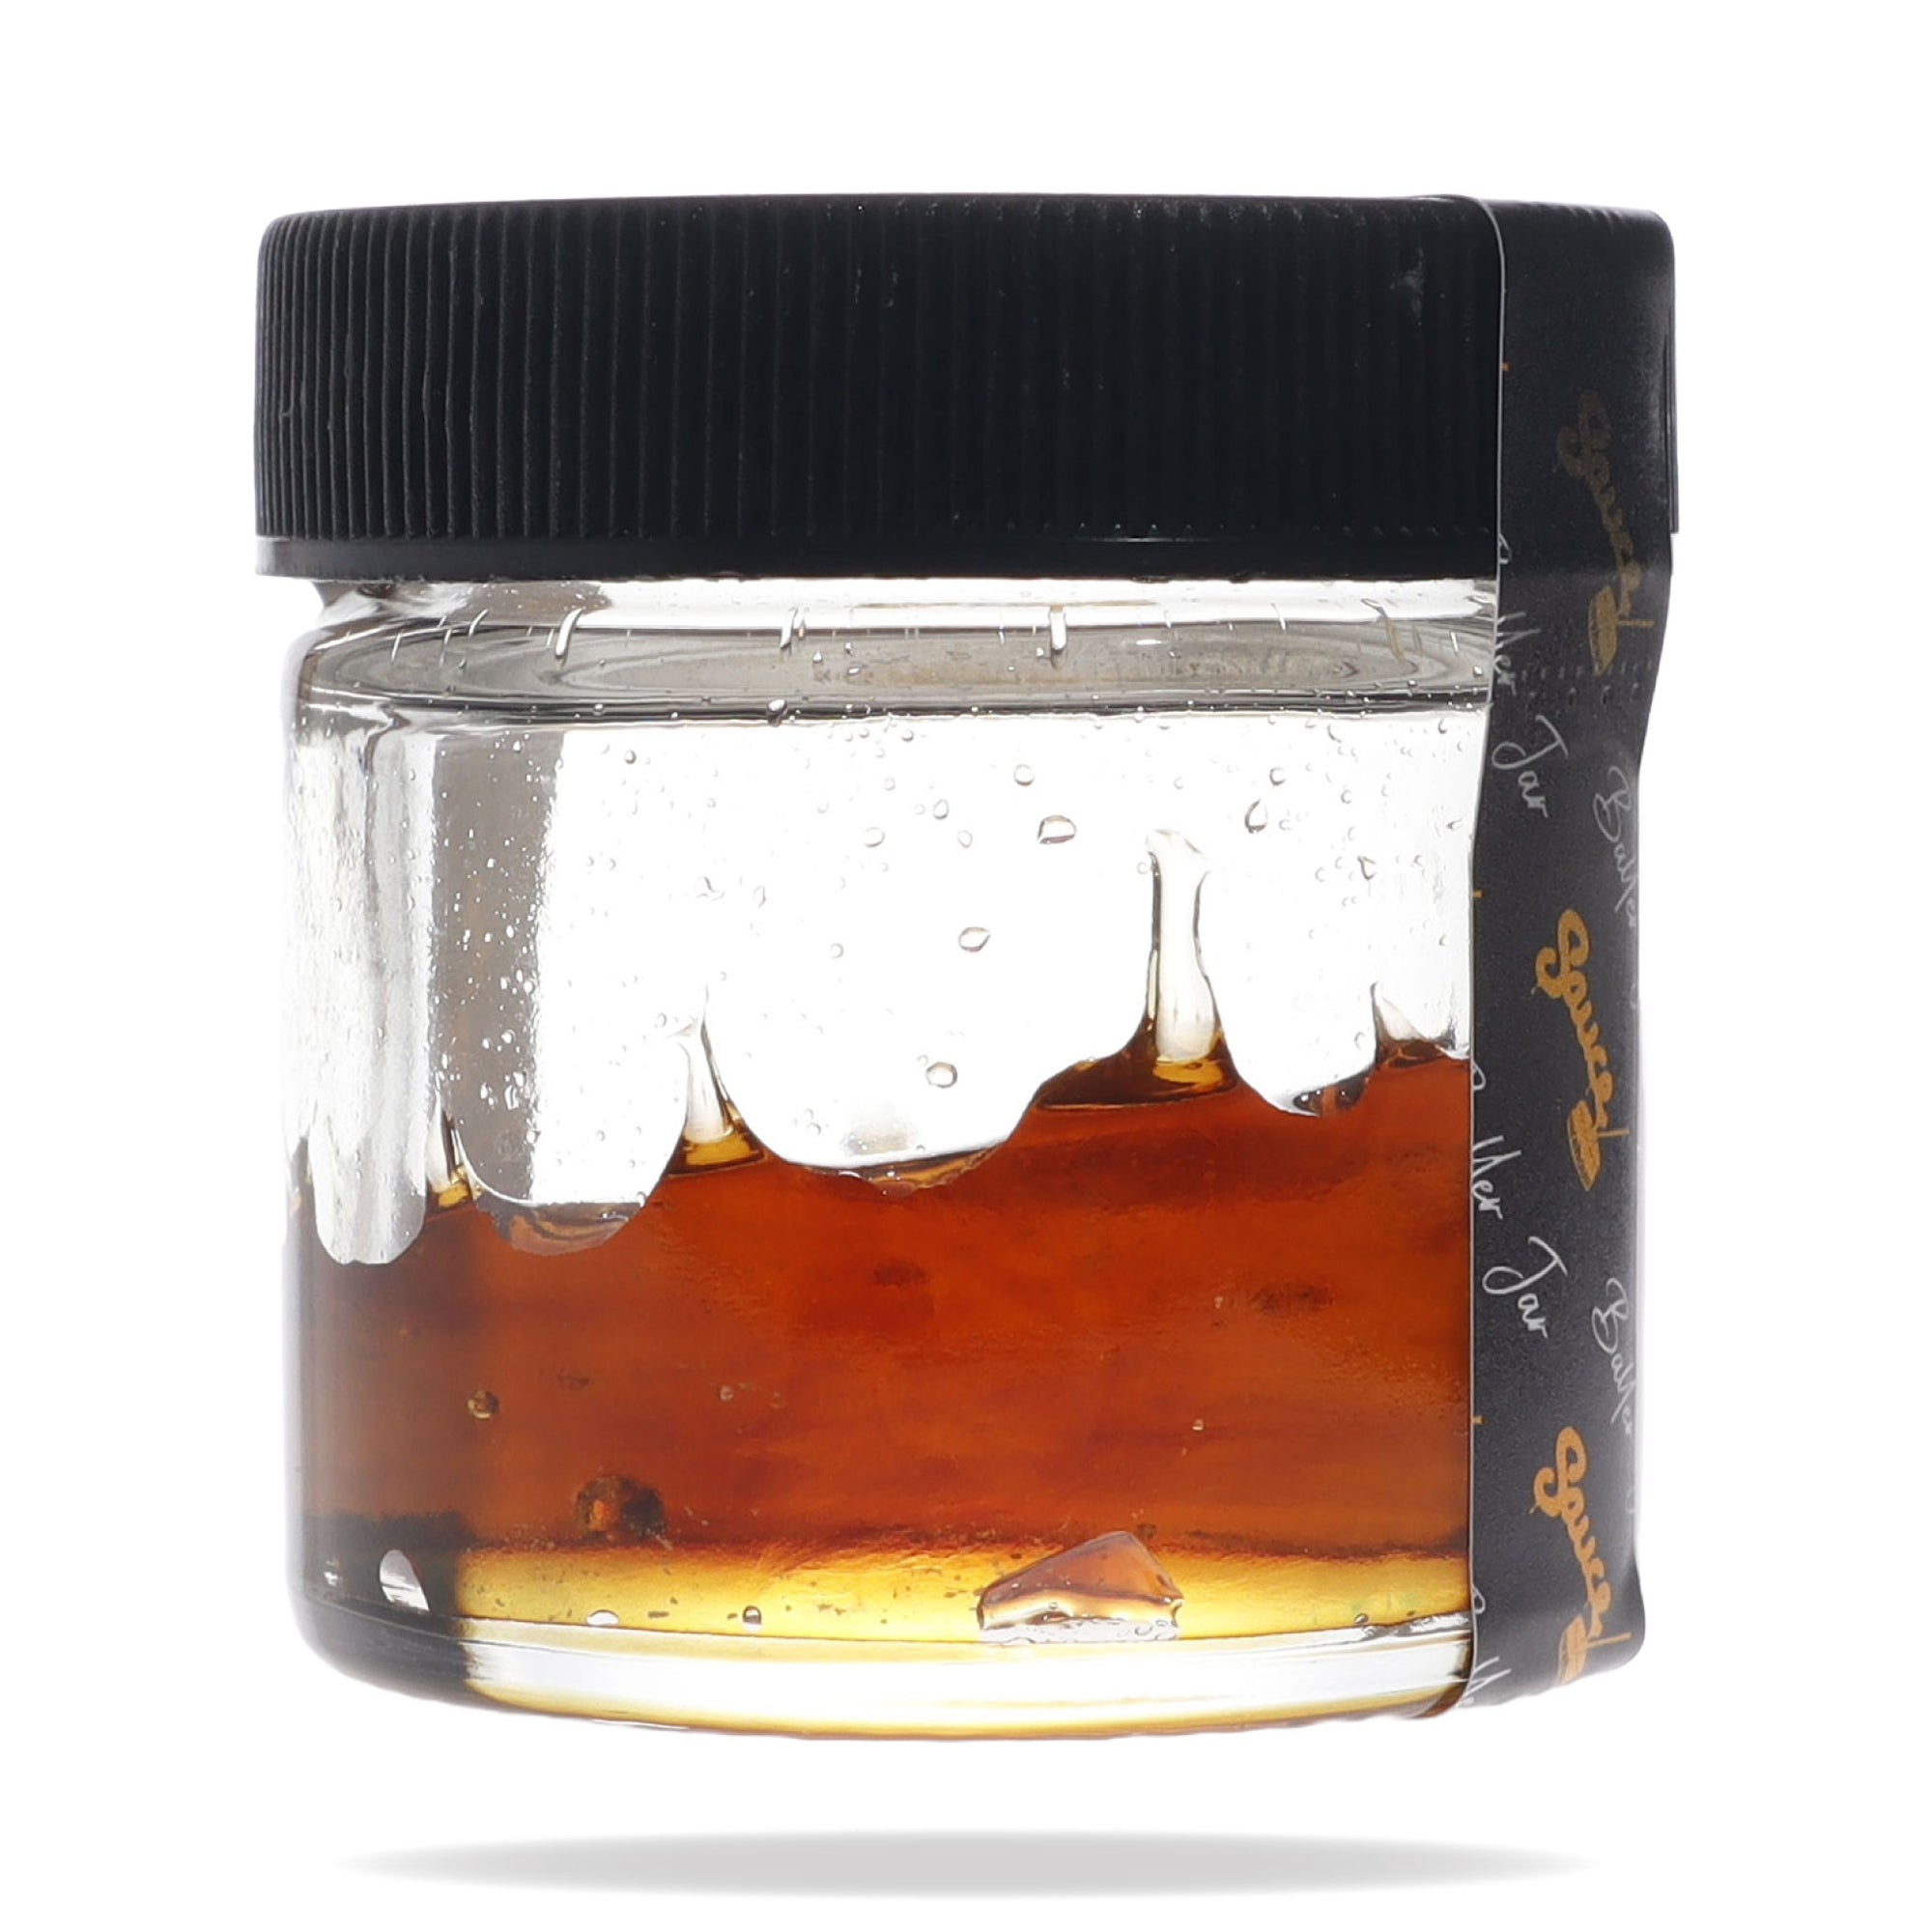 Image of Super Sour Space Candy CBDa Shatter 14 Gram Baller Jar.